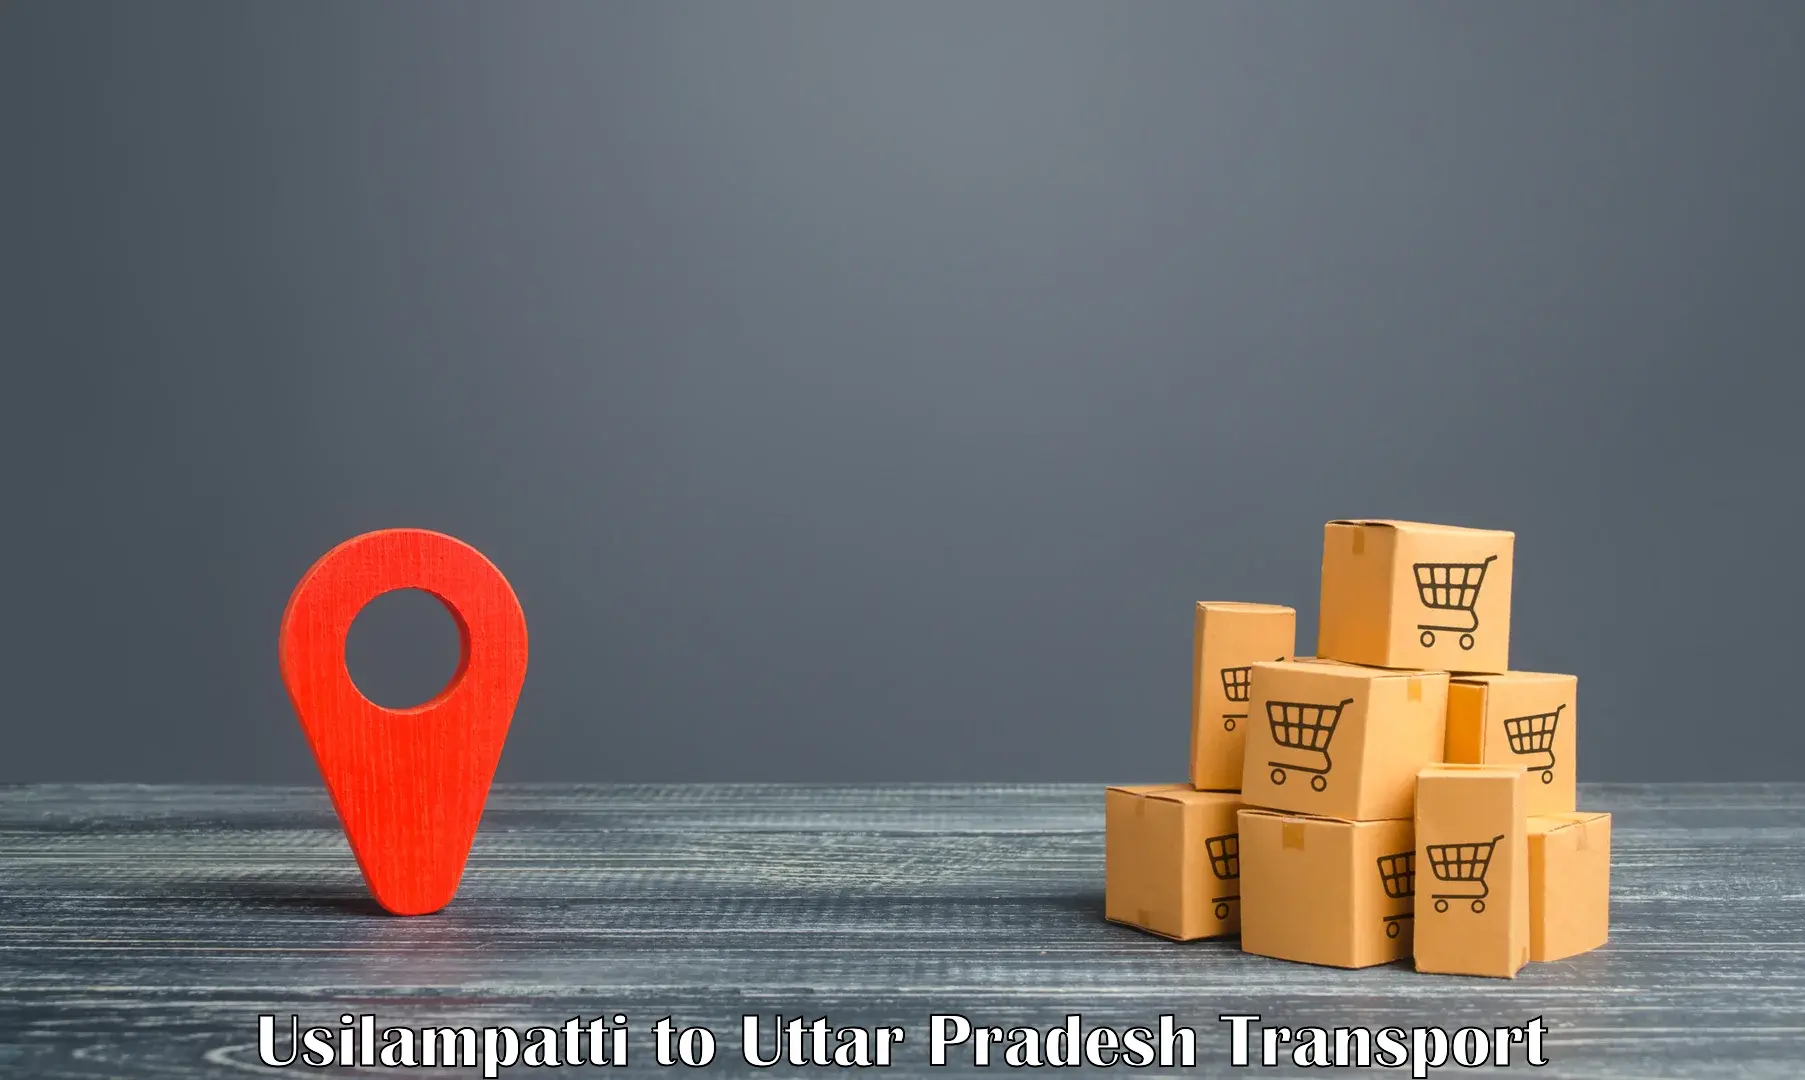 Cargo transportation services Usilampatti to Agra